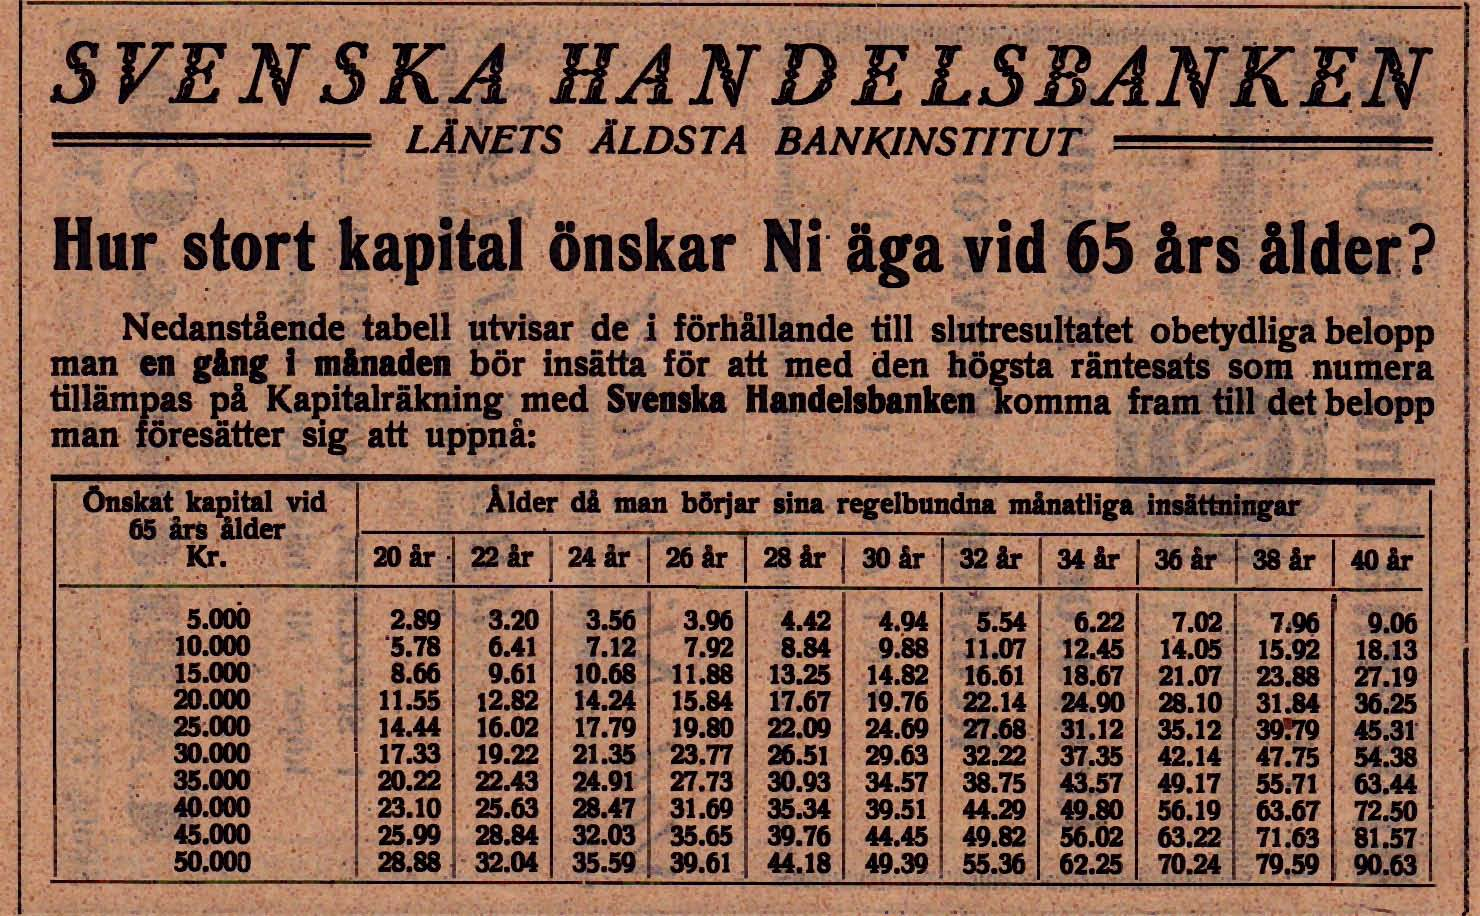 11 Sundsvalls Enskilda Bank Kungsgatan 61 Tel. Namnanrop 1948 Sundsvallsbanken Kungsgatan 61 Tel. 125550 1966 -- Dir. E. Ehn -- Kamrer I Forsberg -- Kamrer J.